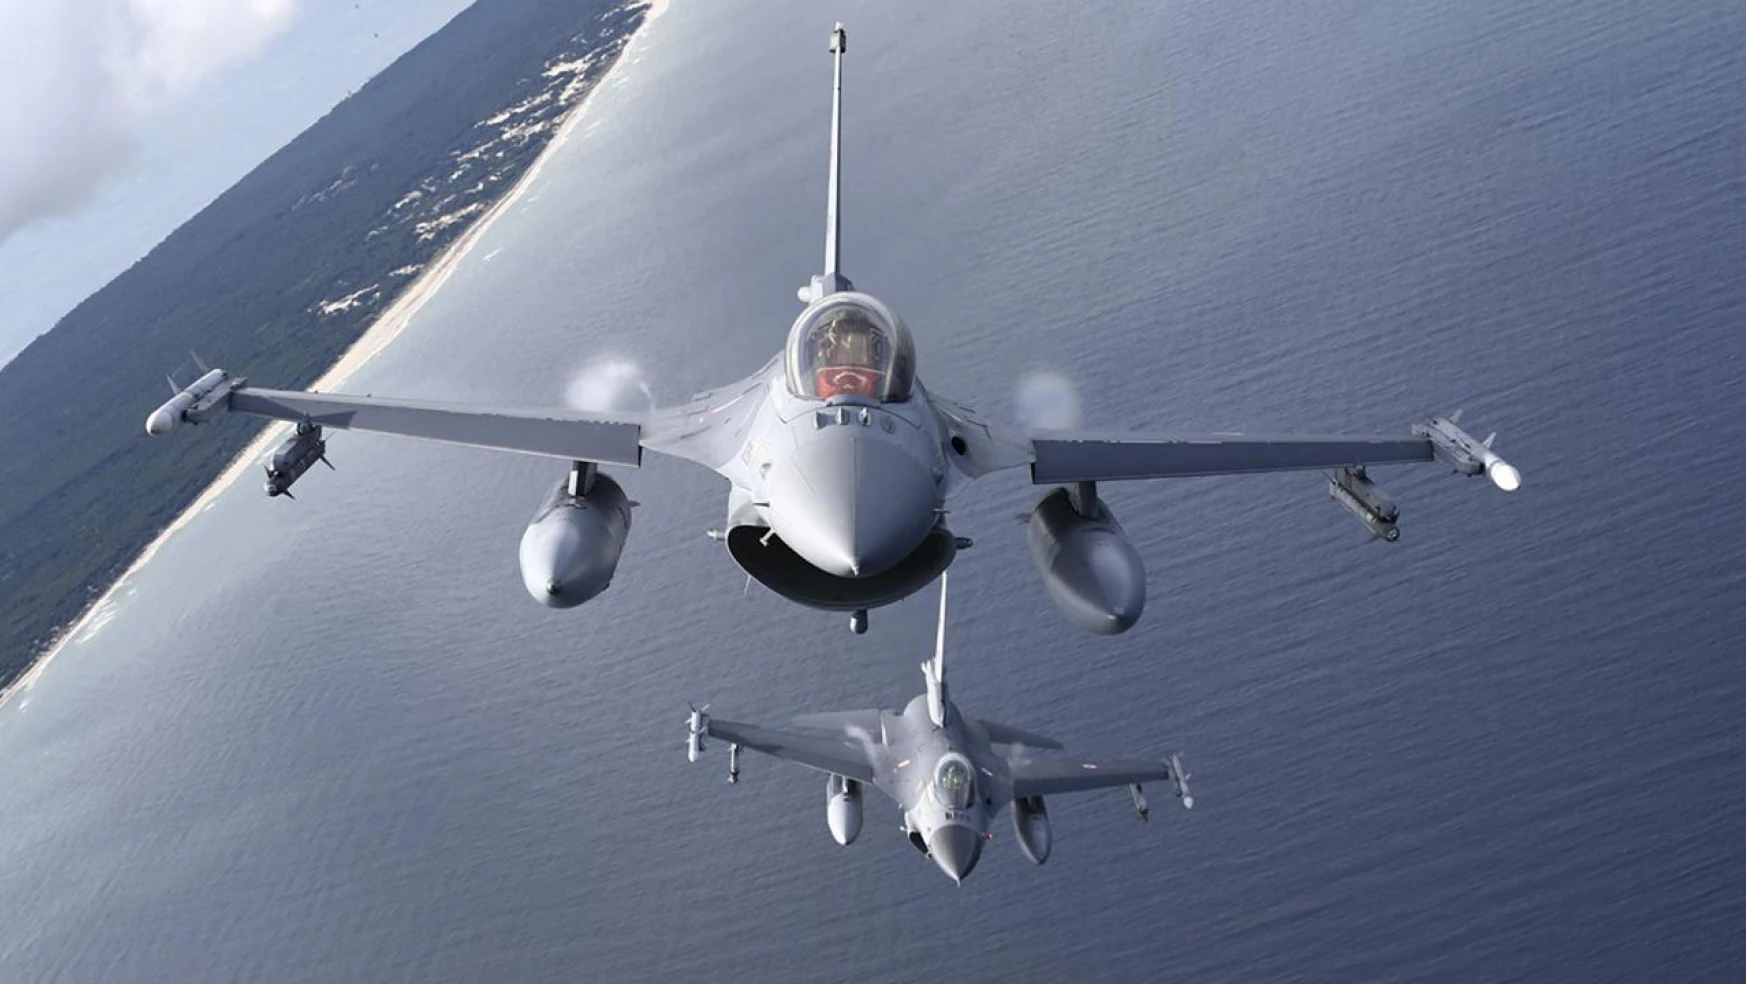 Yunanistan'da F-16 savaş uçağı denize düştü